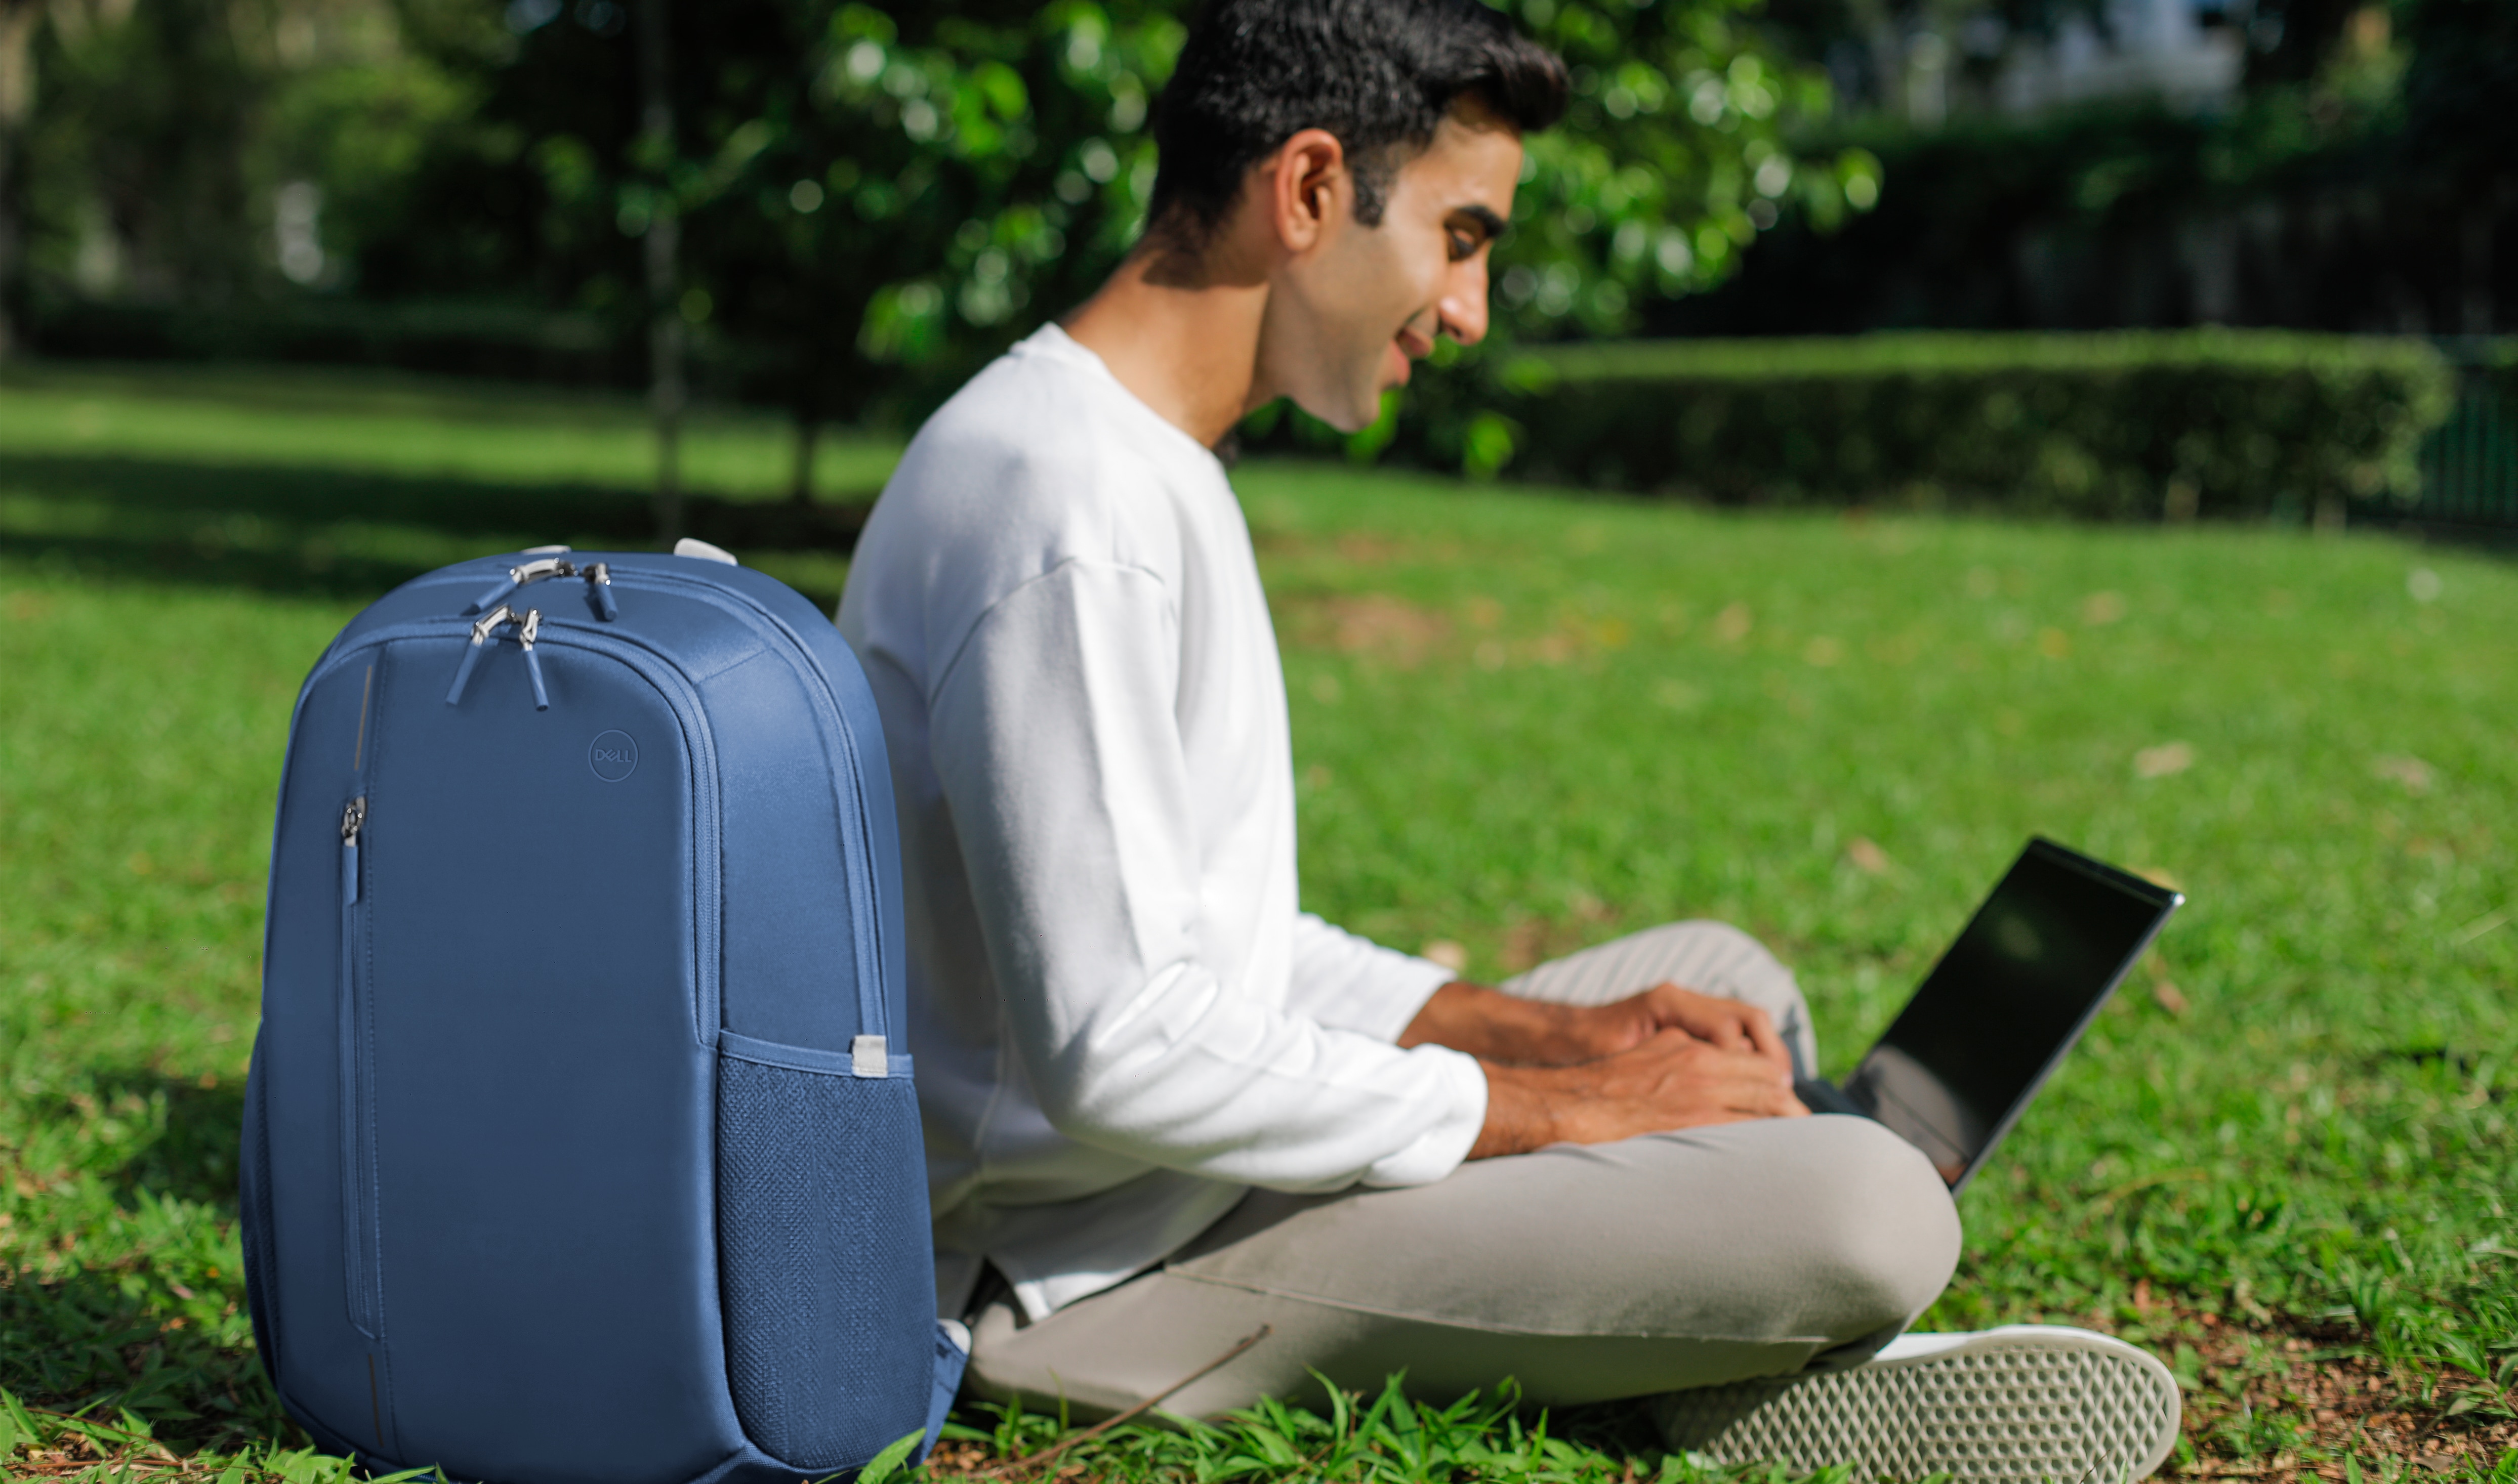 Imagem de um homem sentado na grama com um notebook Dell no colo e uma mochila azul Dell CP4523B ao lado.